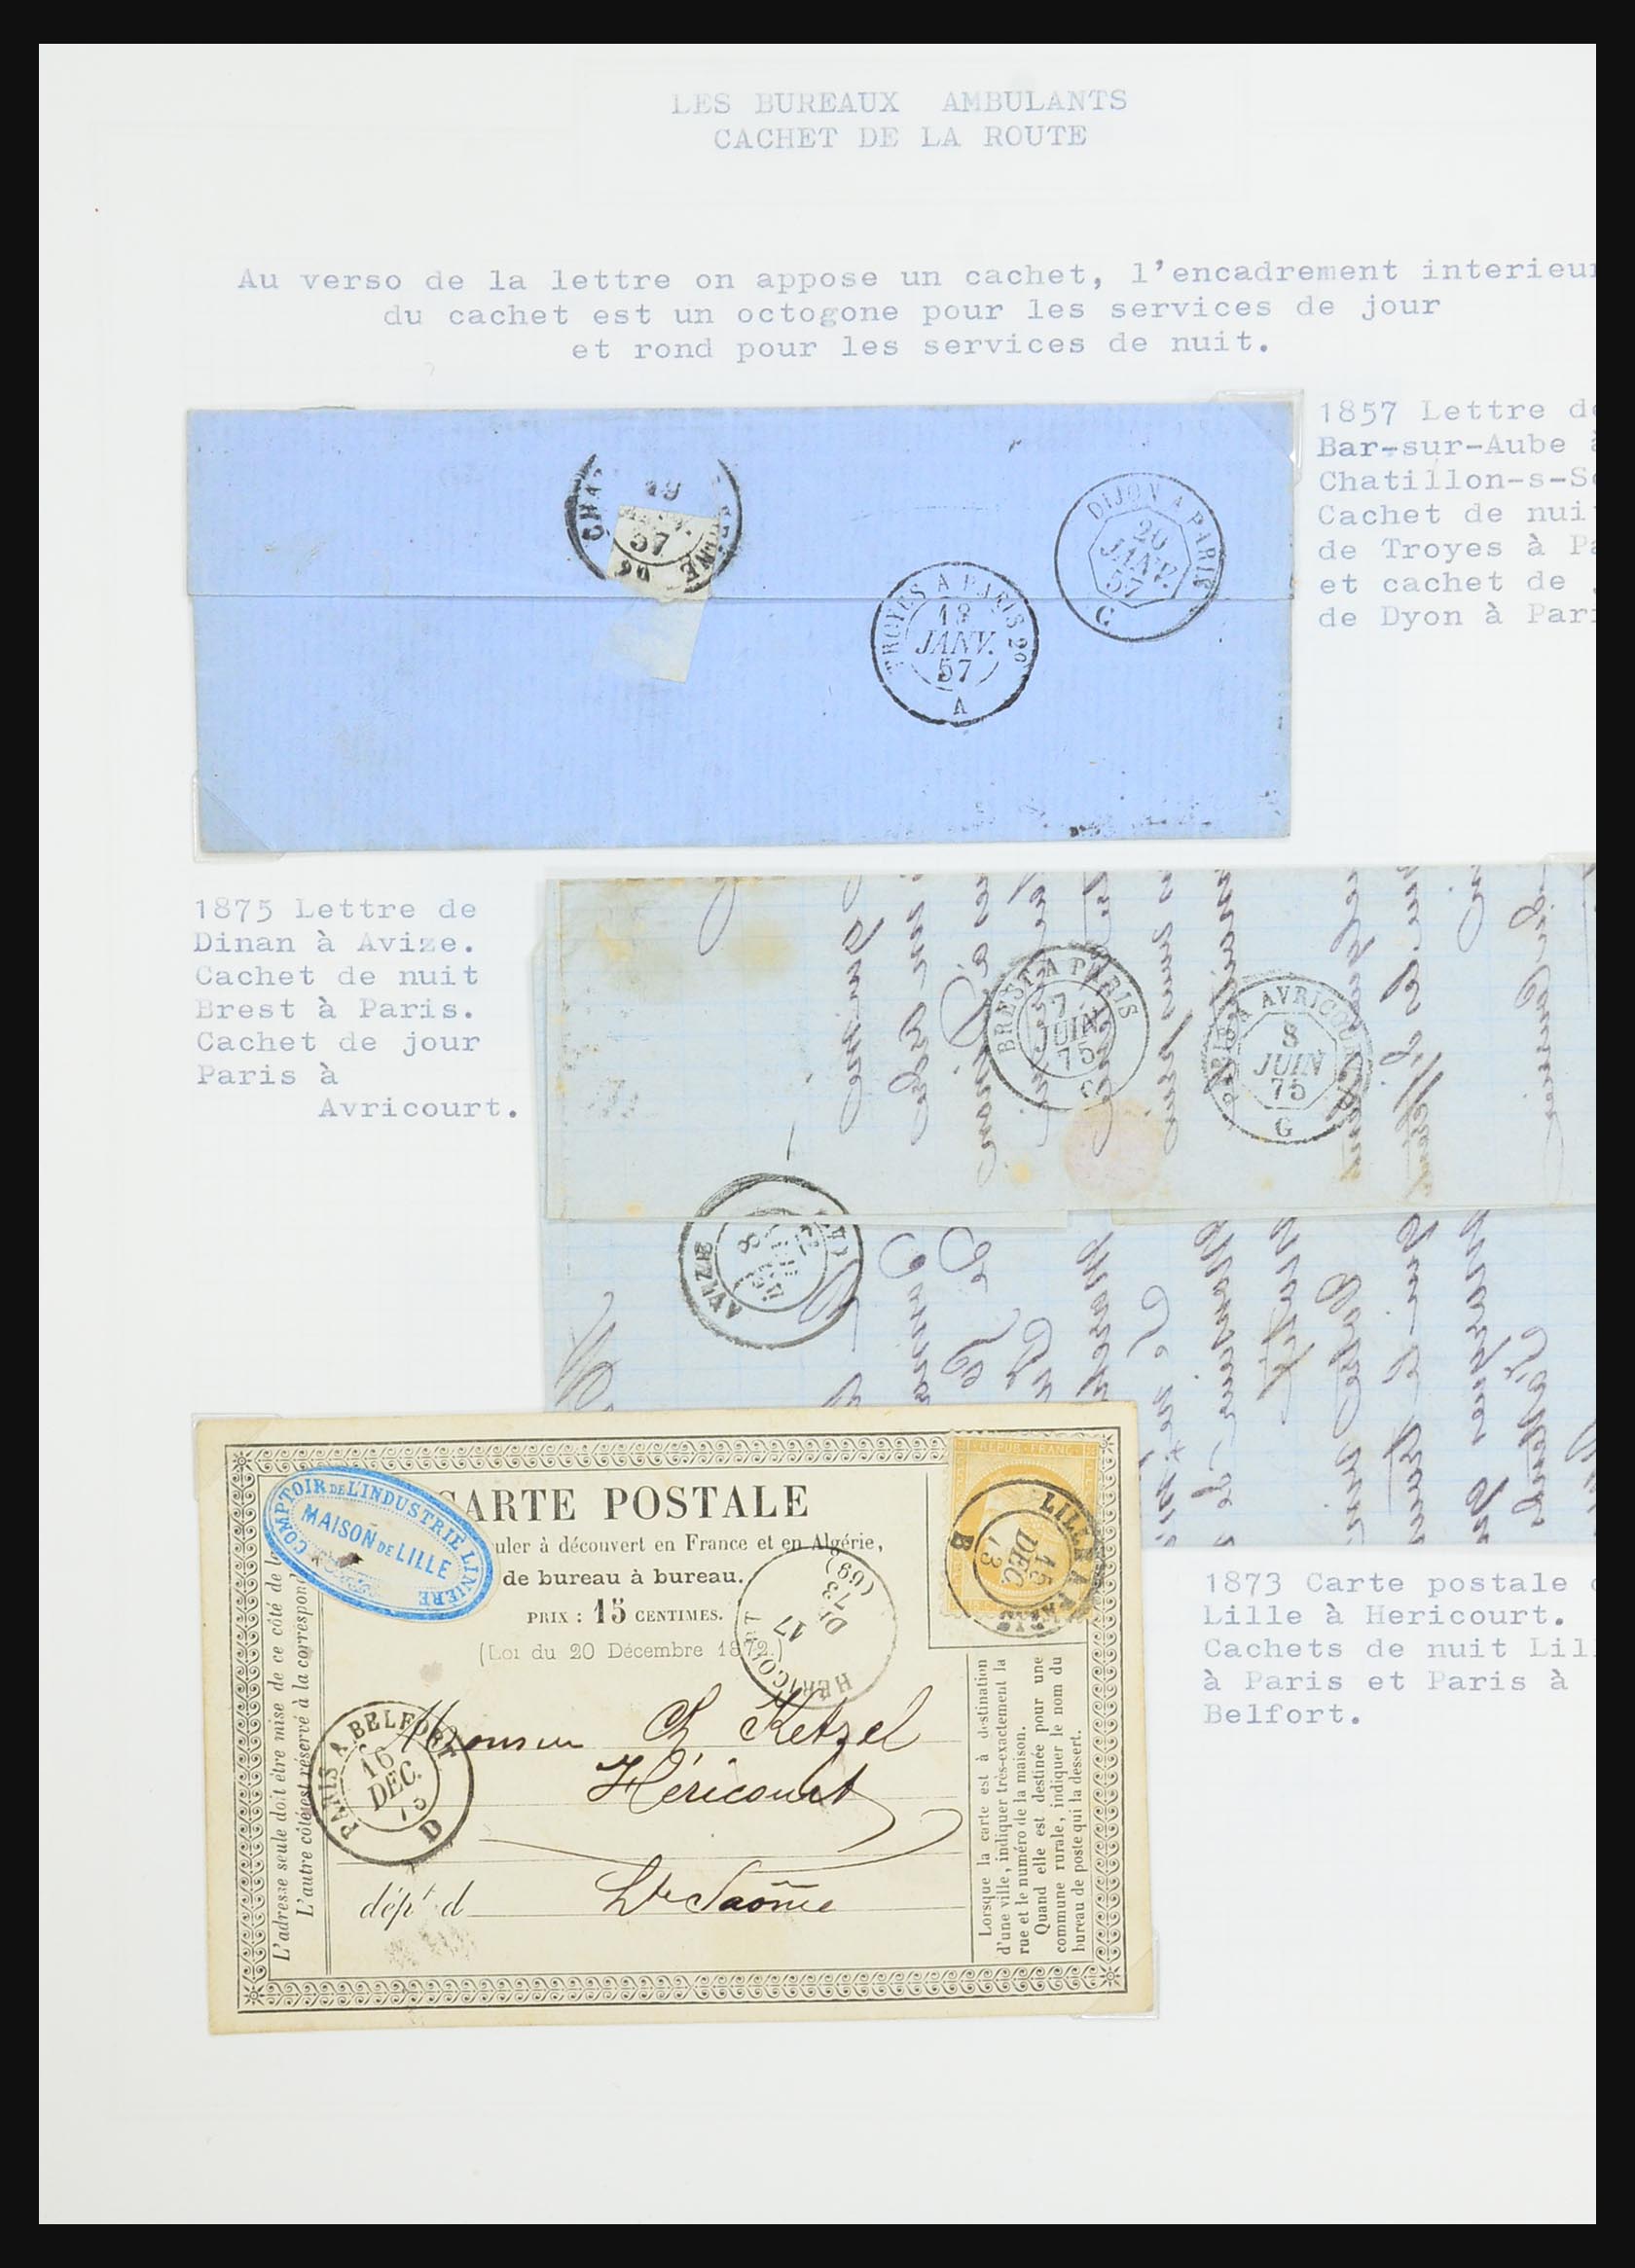 31526 072 - 31526 Frankrijk brieven en stempels 1725 (!)-1900.